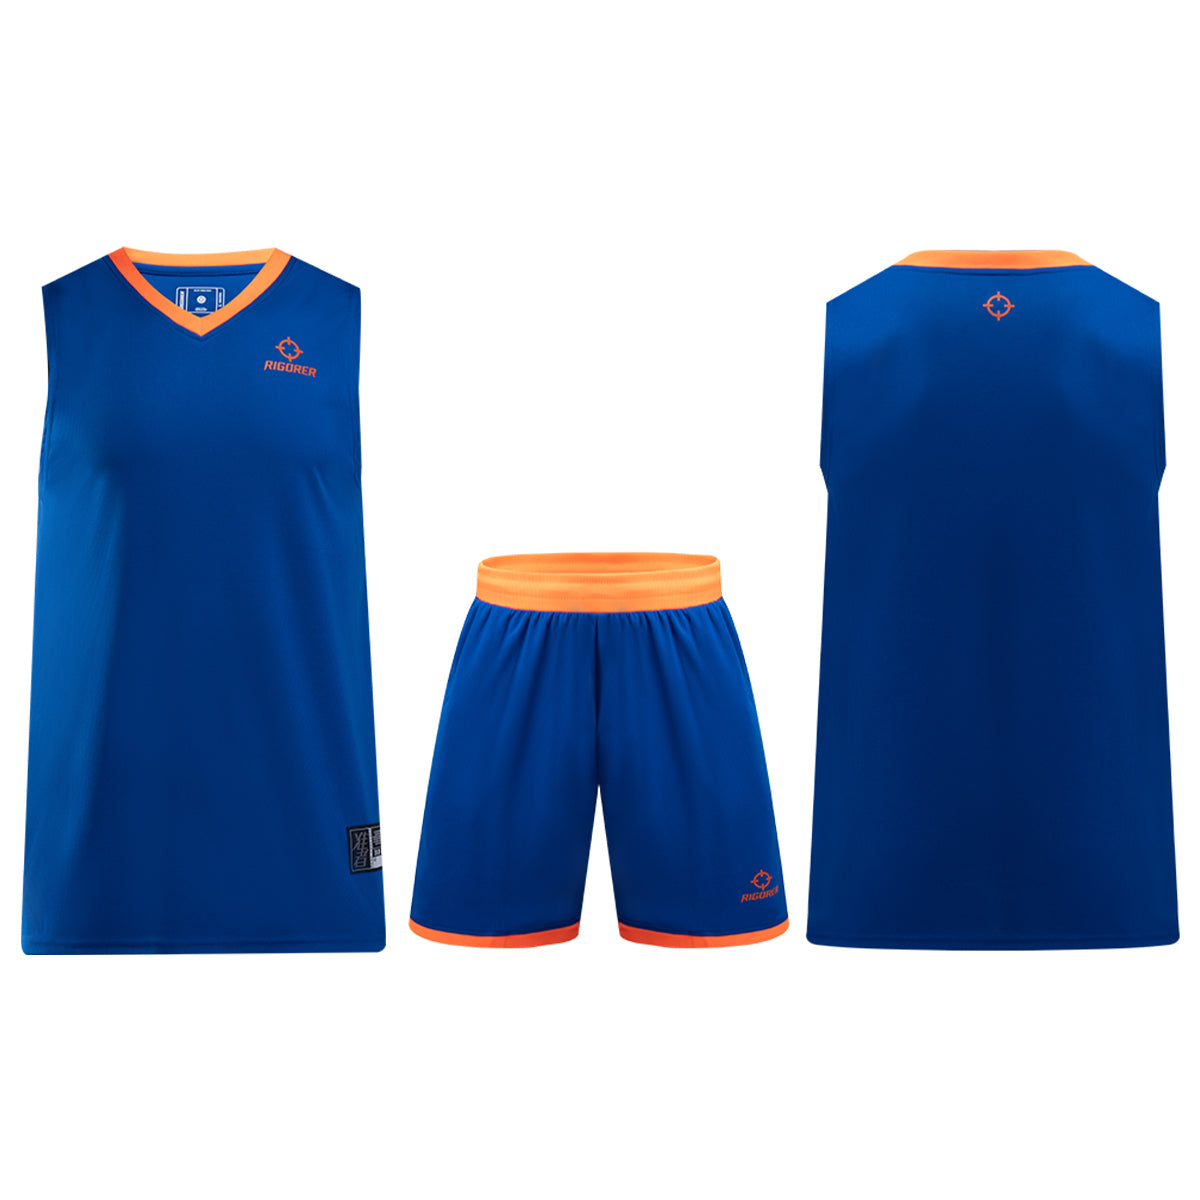 Custom Basketball Jersey Team Wear [Z120210126]